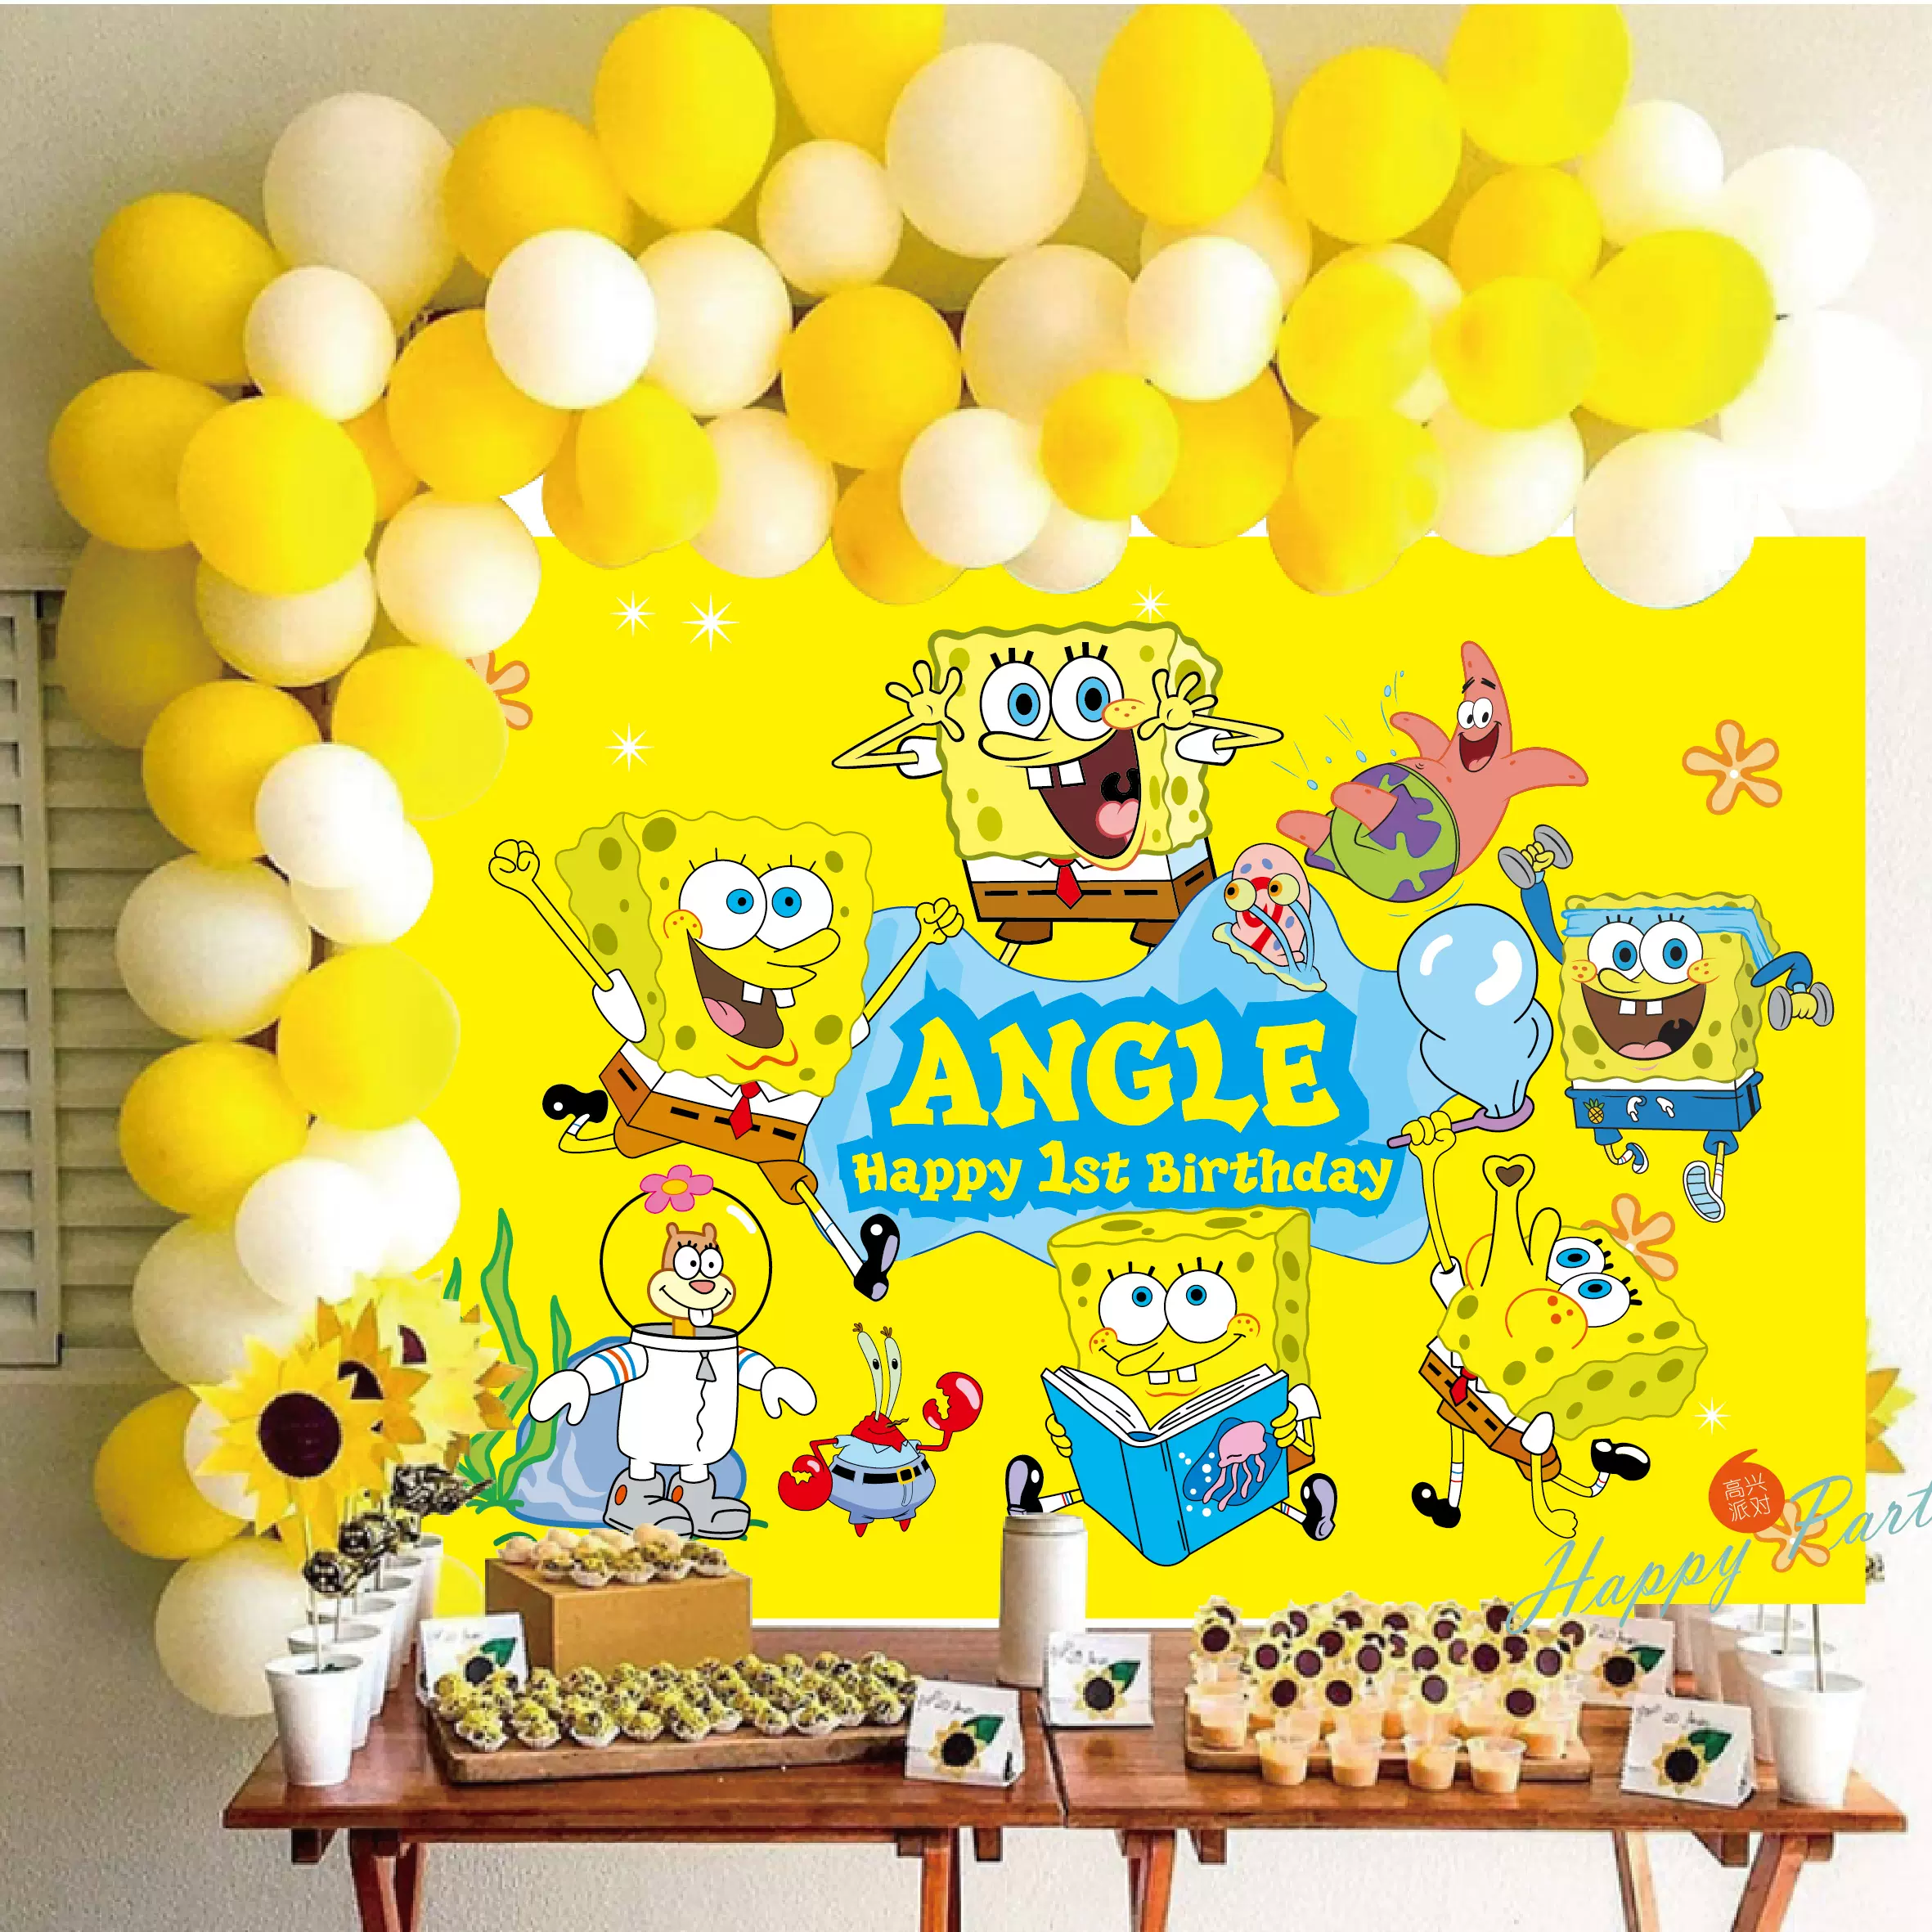 海绵宝宝背景海报主题甜品台背景墙定制布置装饰黄色气球链